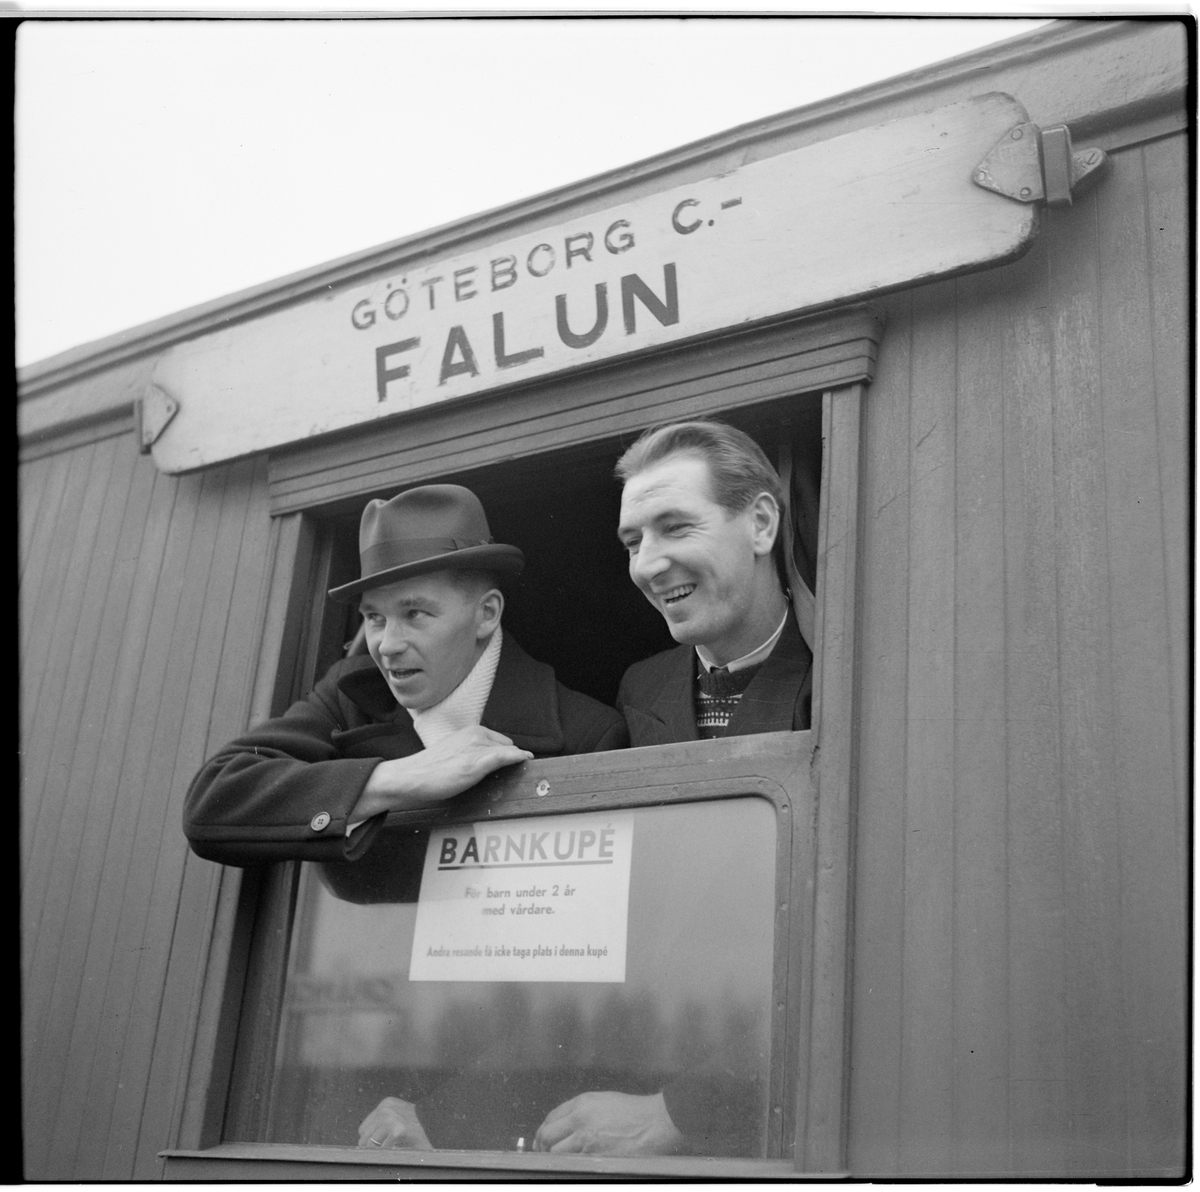 Resande i personvagn på sträckan mellan Göteborg C och Falun. Kupén var reserverad för barn under 2 år med vårdare.